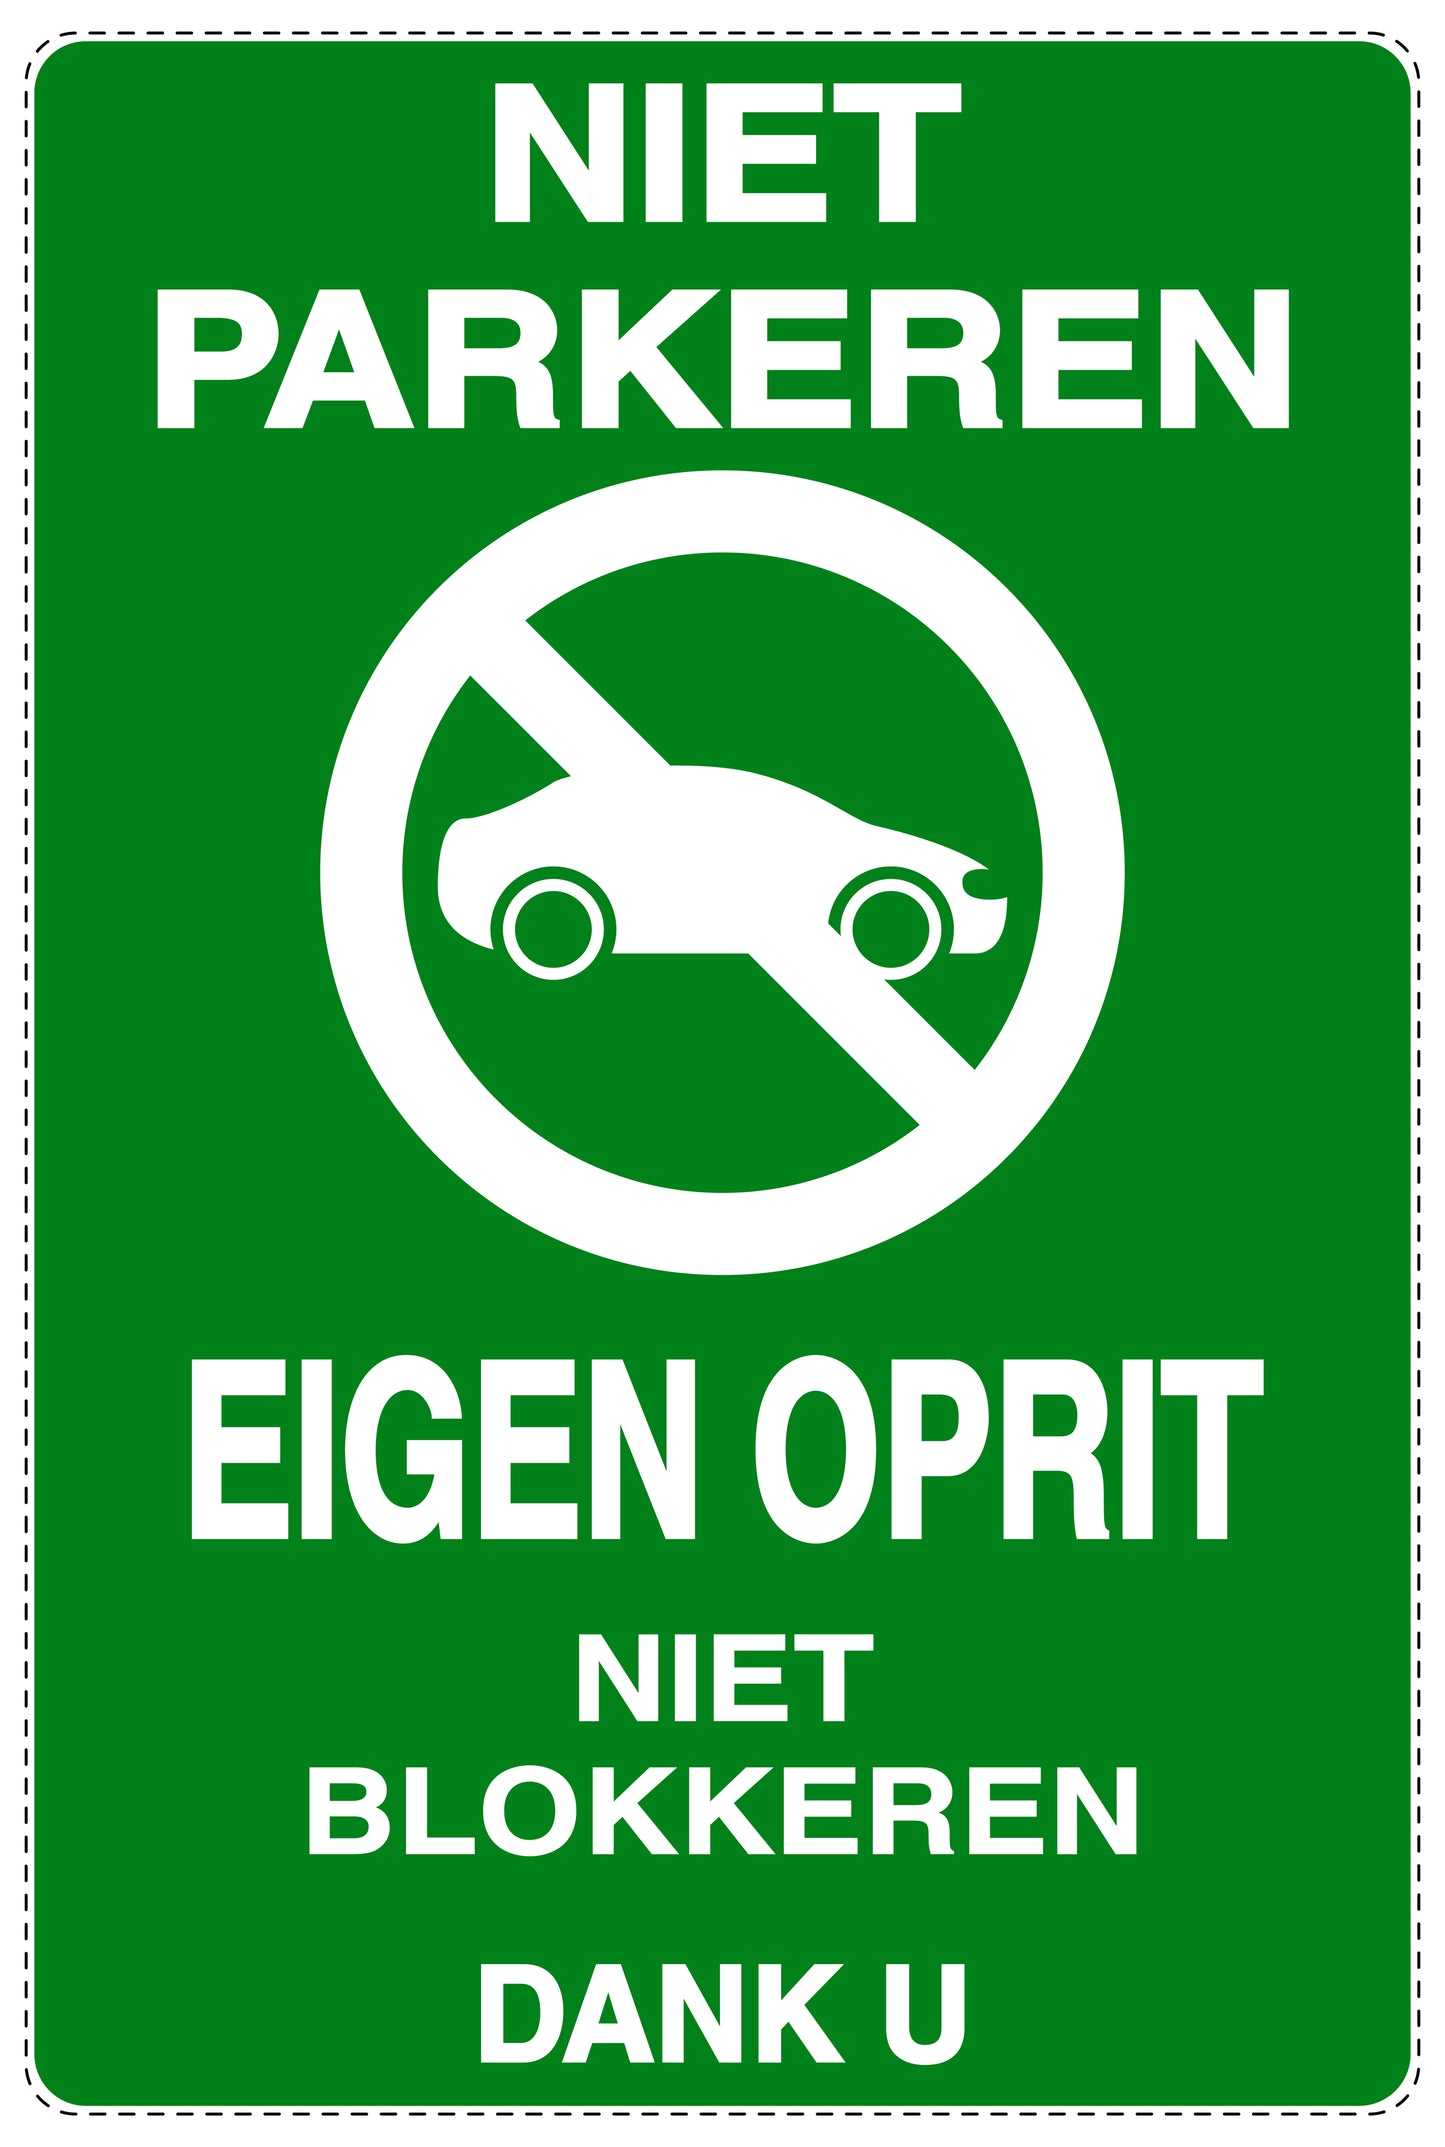 Niet parkeren Sticker "Niet parkeren eigen oprit niet blokkeren dank u" EW-NPRK-2050-54